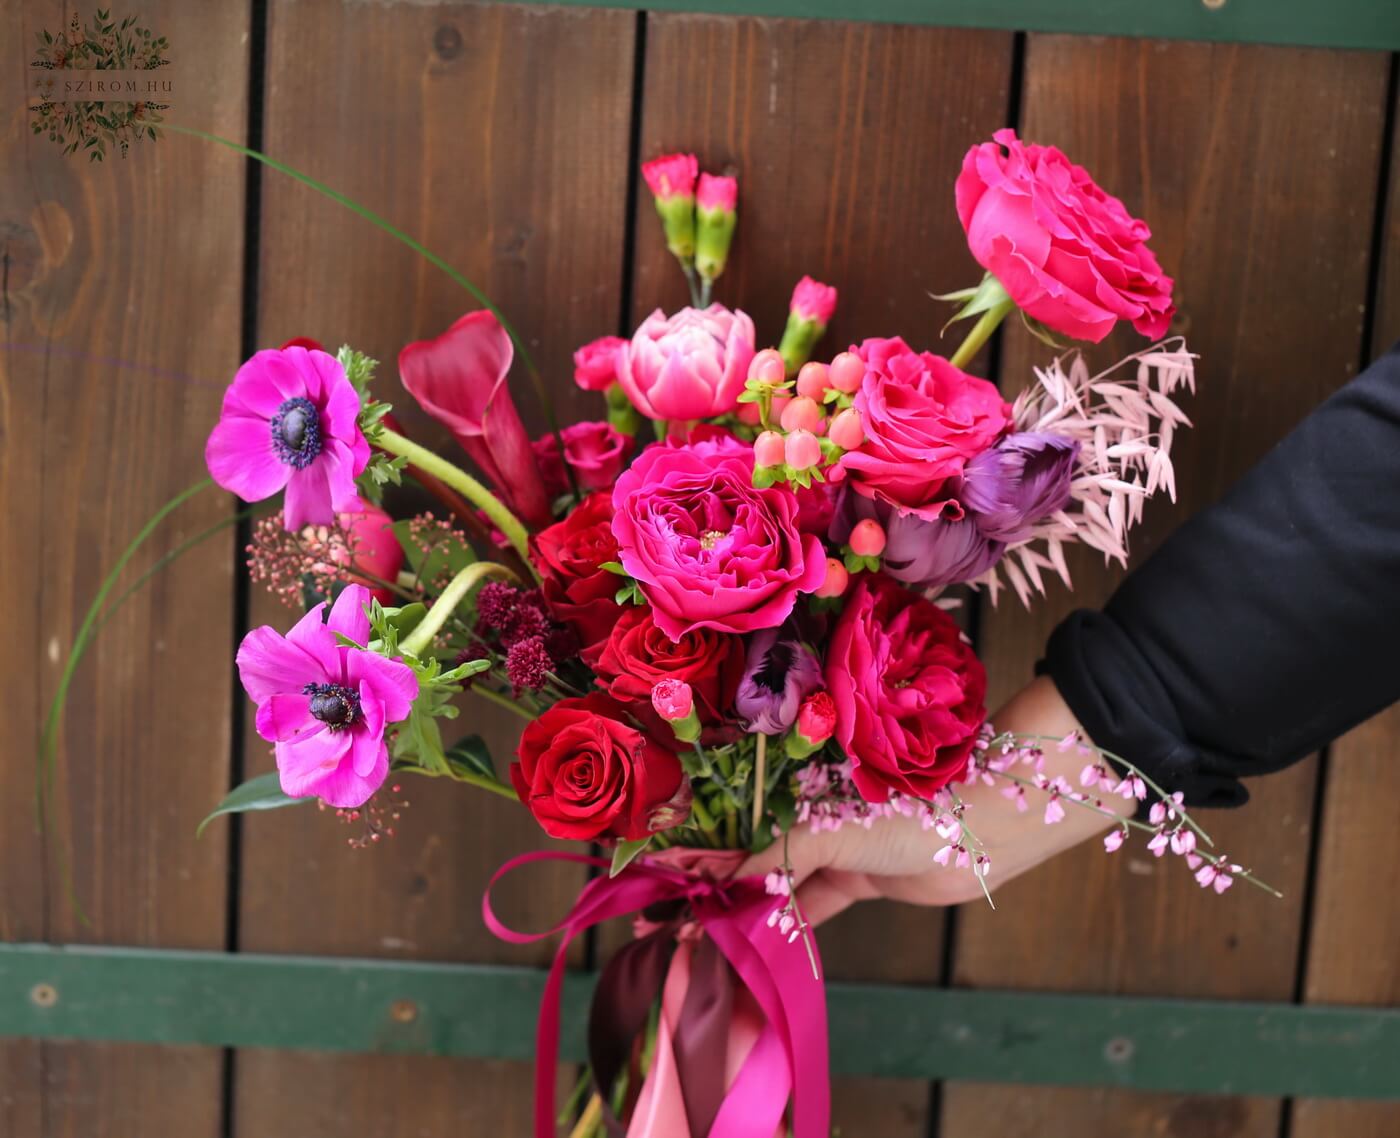 Virágküldés Budapest - Félhold menyasszonyi csokor  (vörös, sötét rózsaszín, David austin rózsa, anemone, rózsa, tulipán, kála, skimmia)